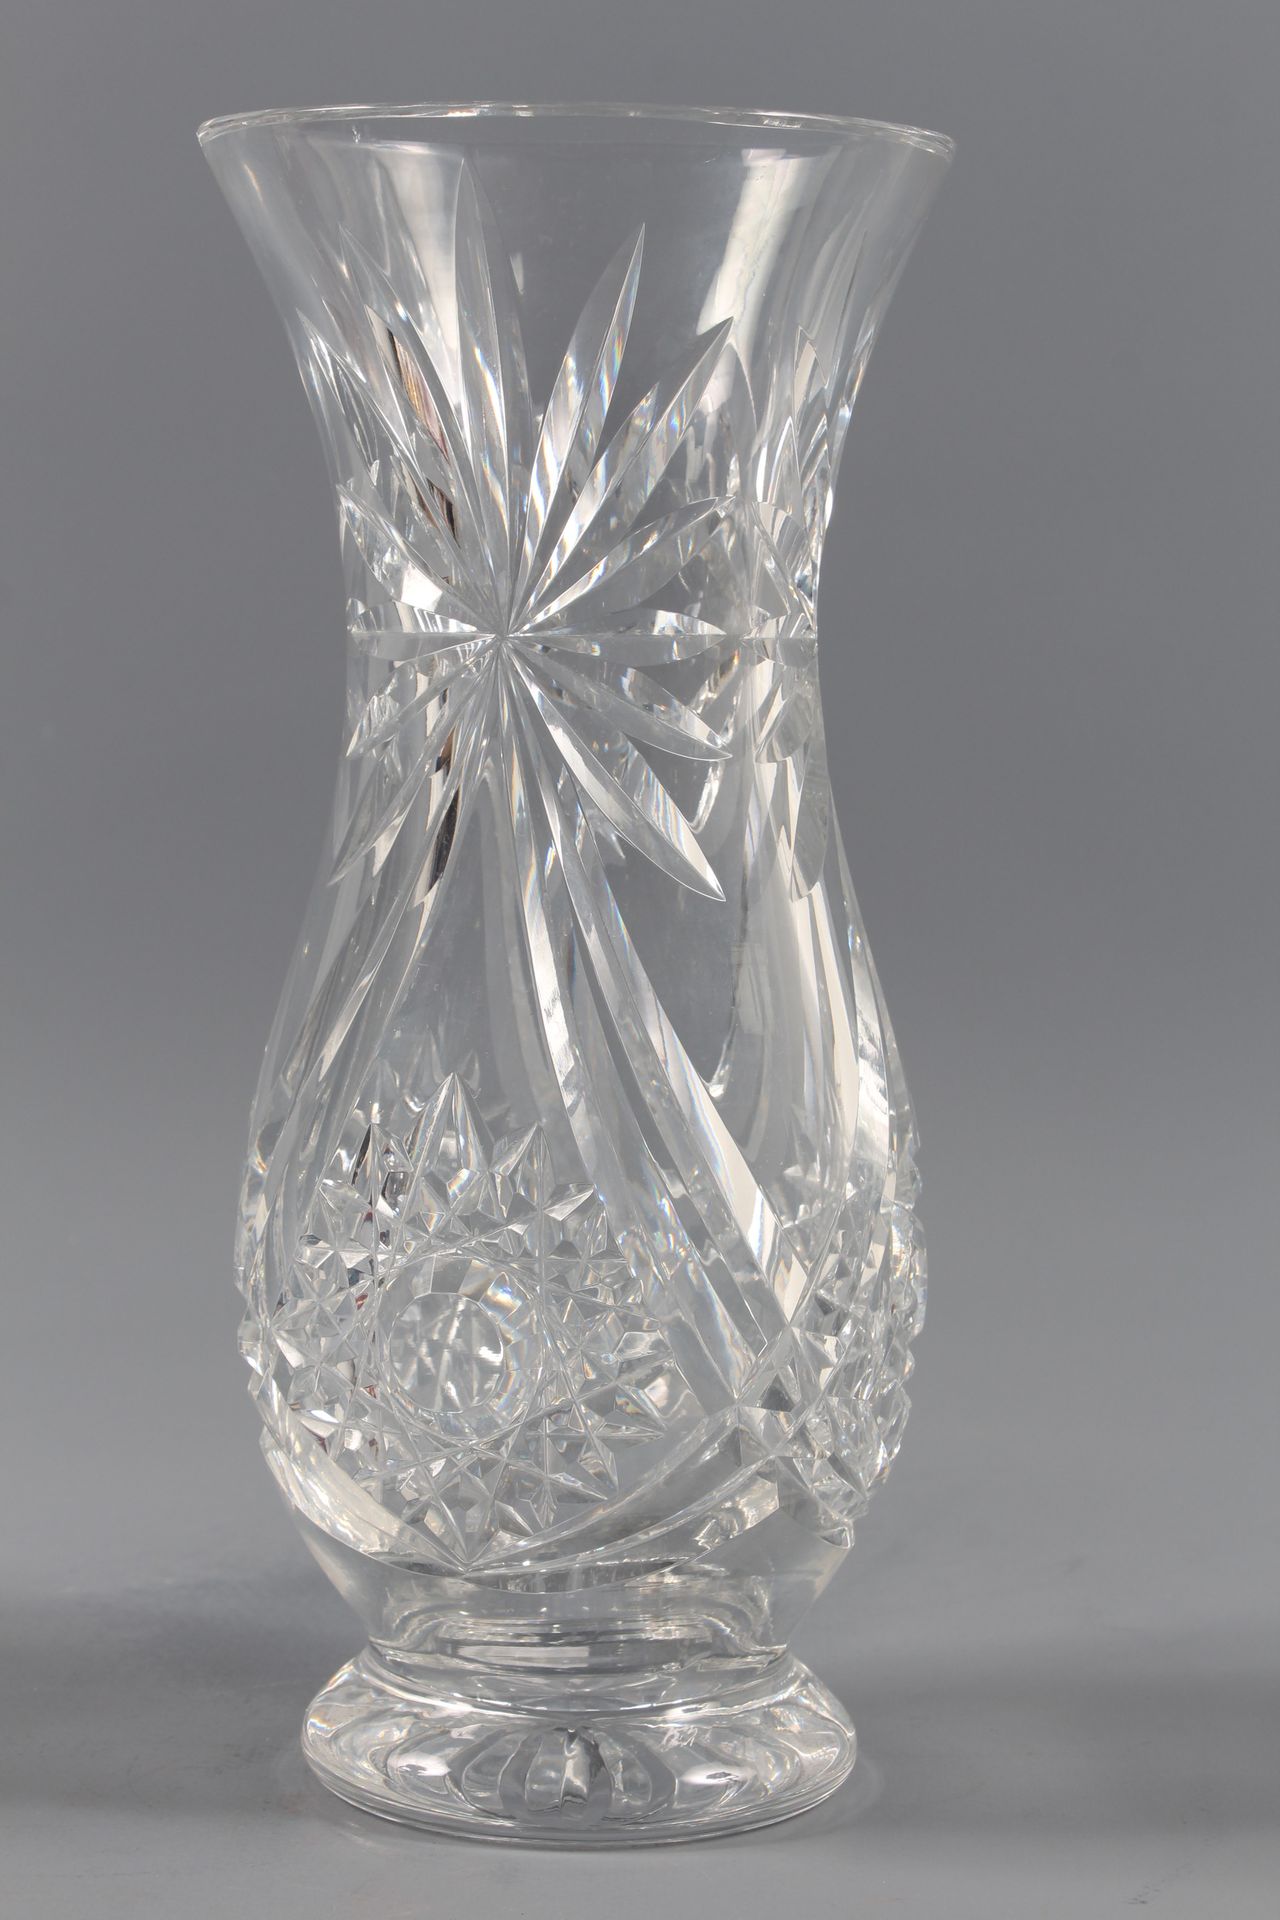 Null Vaso di cristallo tagliato.

Altezza: 29 cm